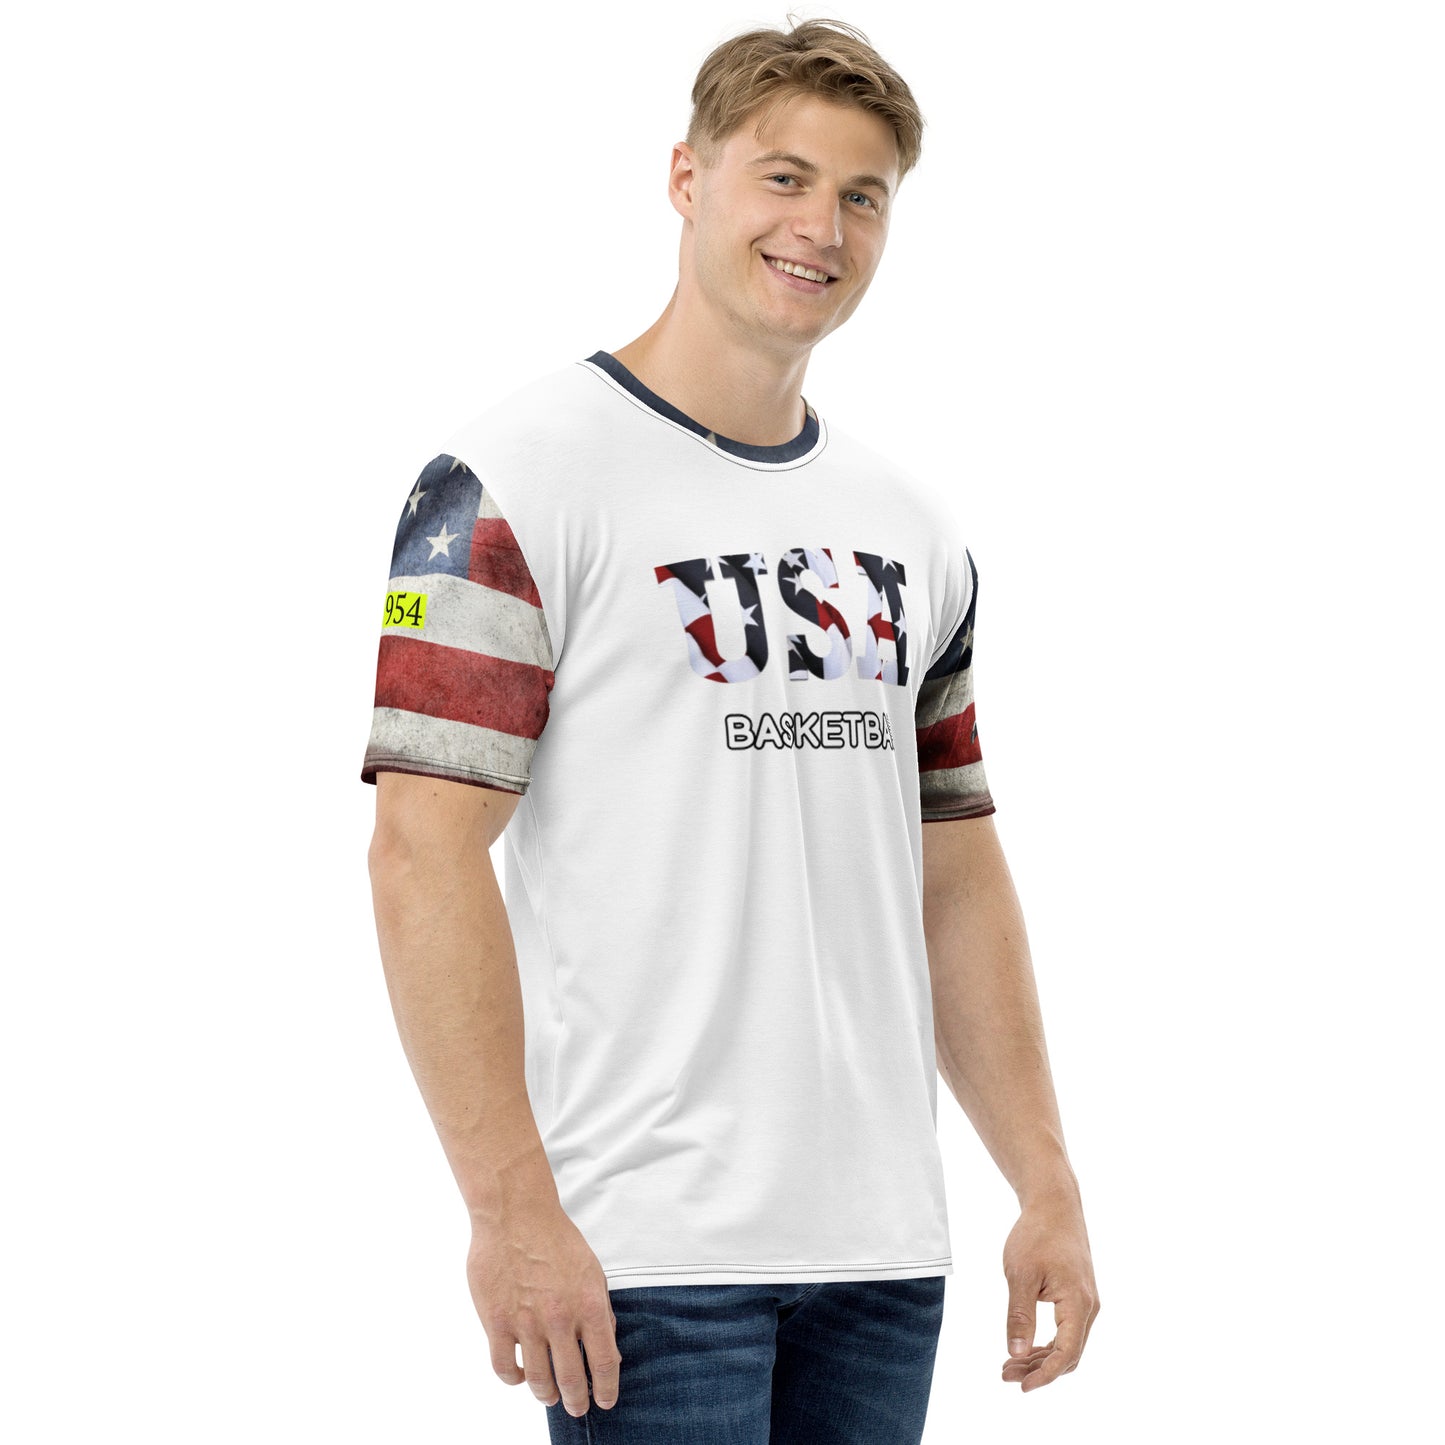 USA Basketball 954 t-shirt